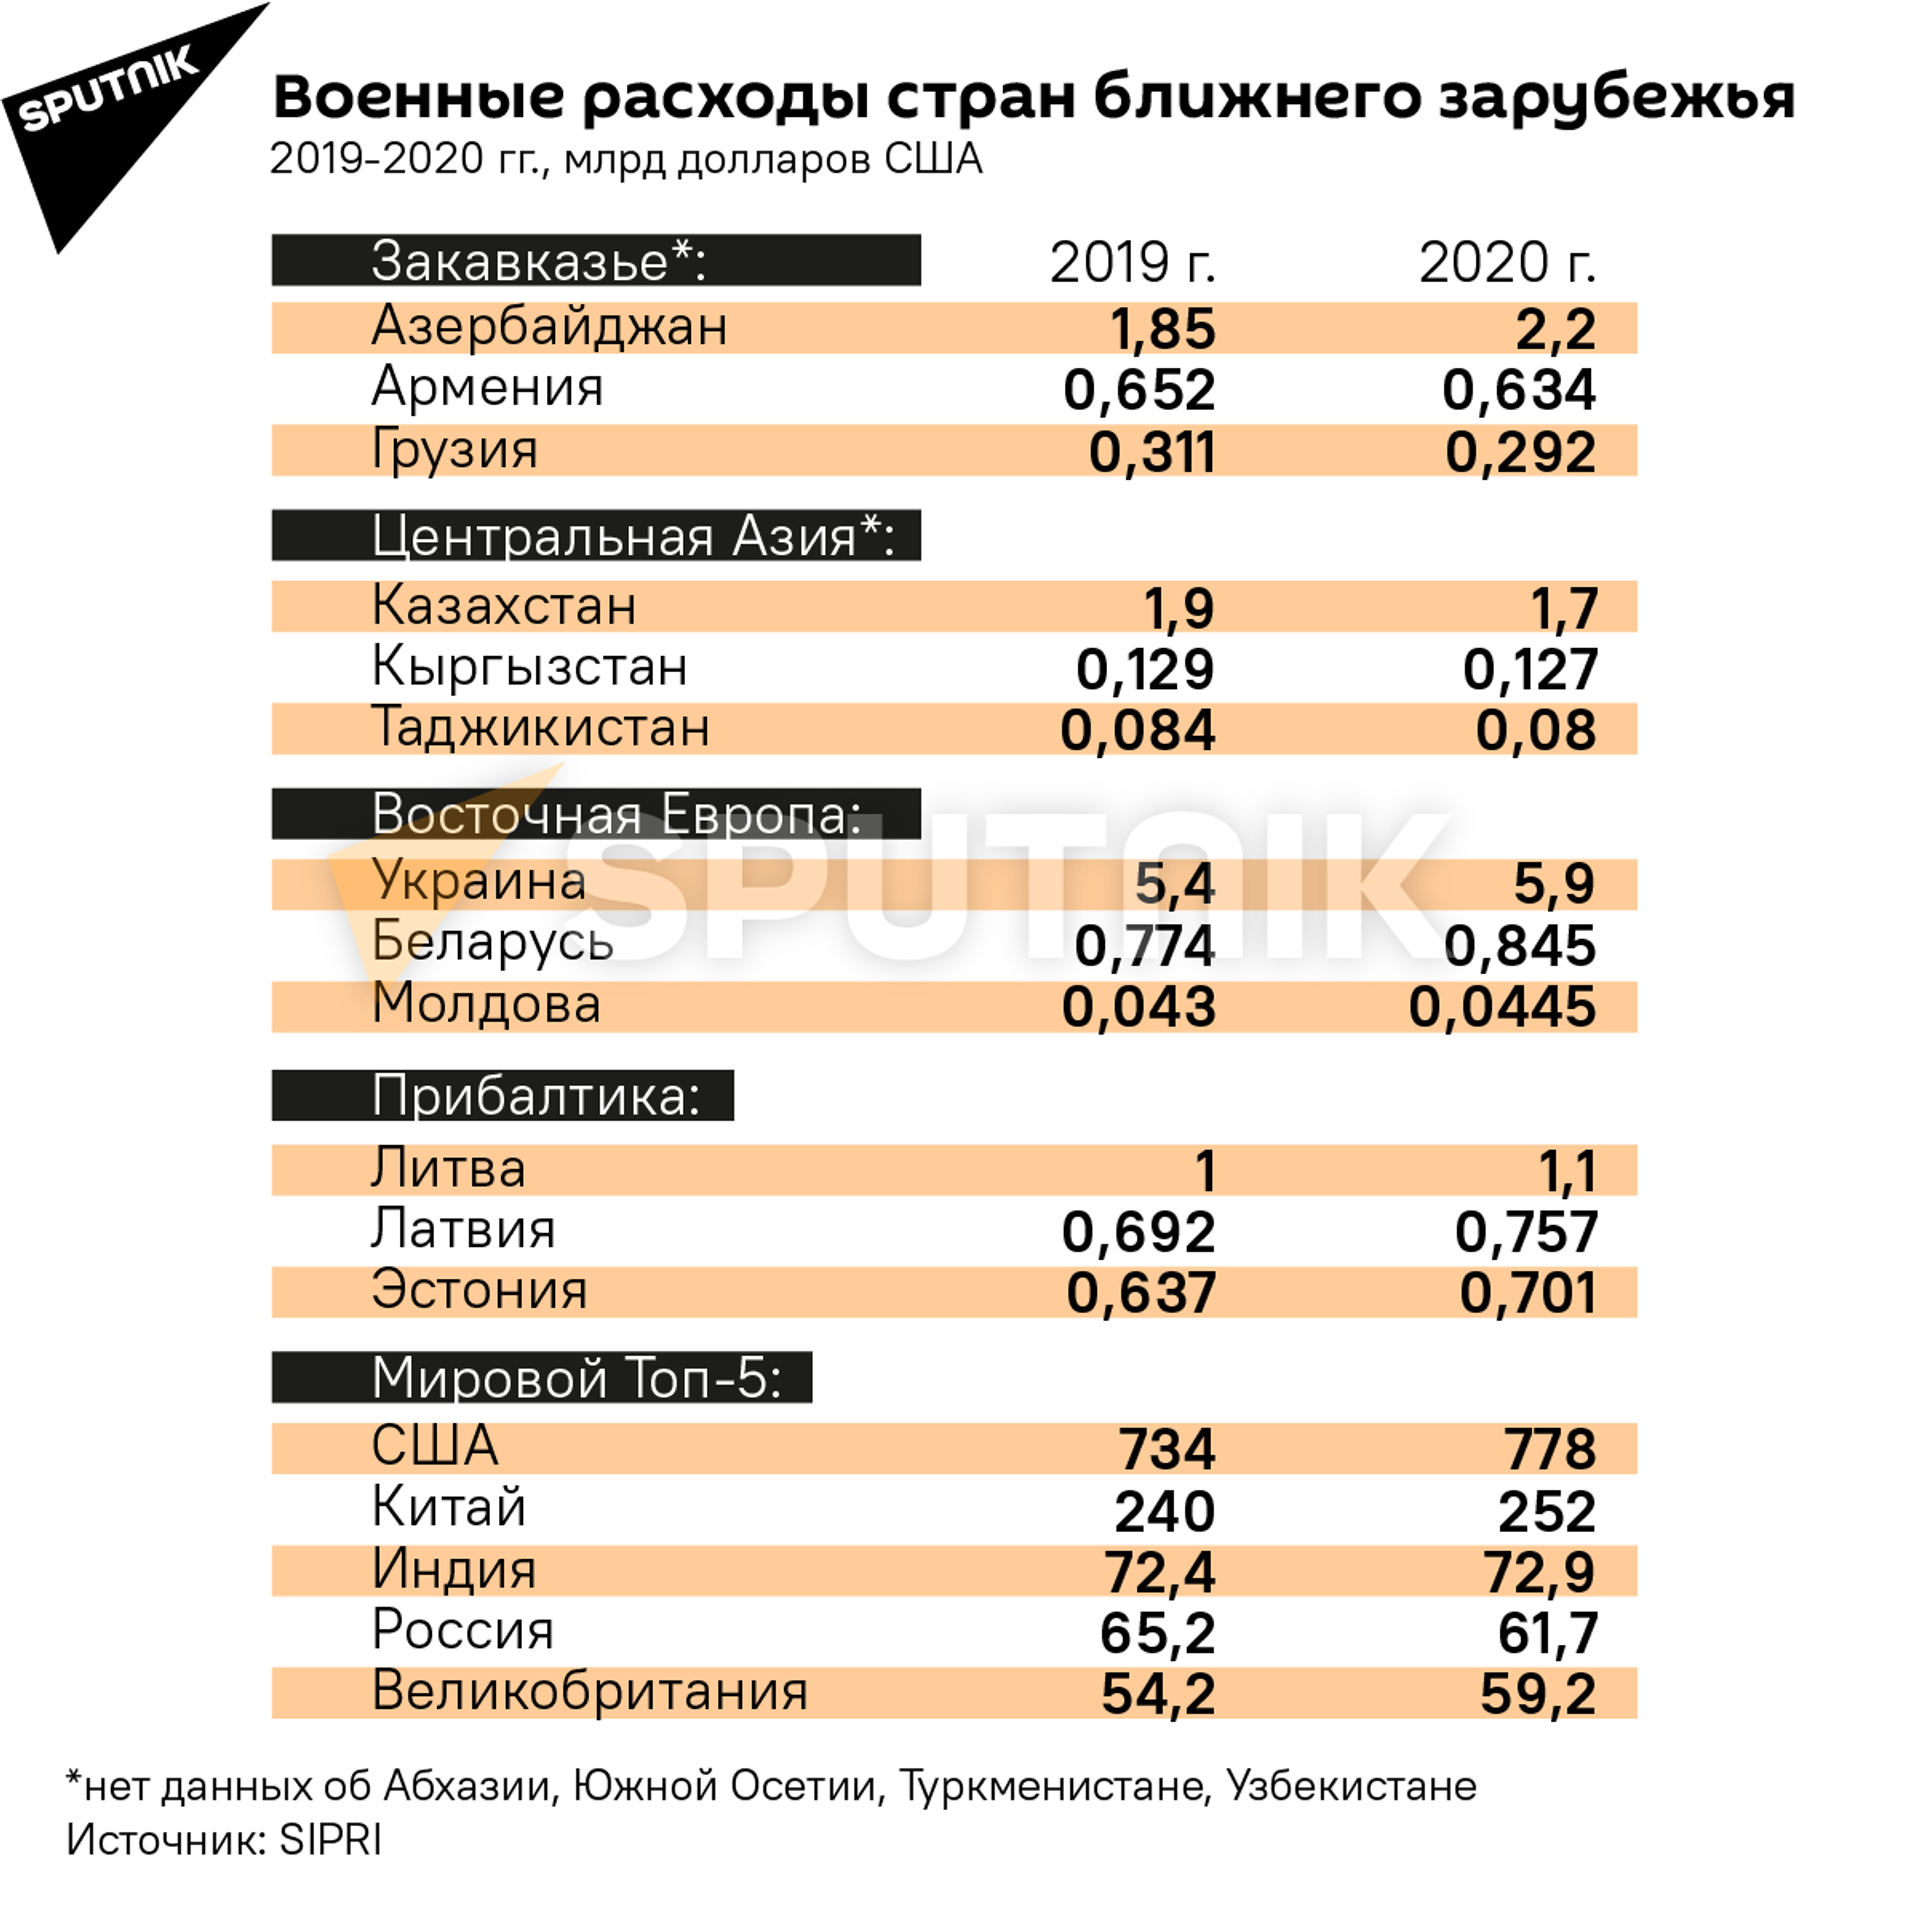 Доллары милитаризации: какие страны повышают военные расходы - Sputnik Абхазия, 1920, 27.04.2021